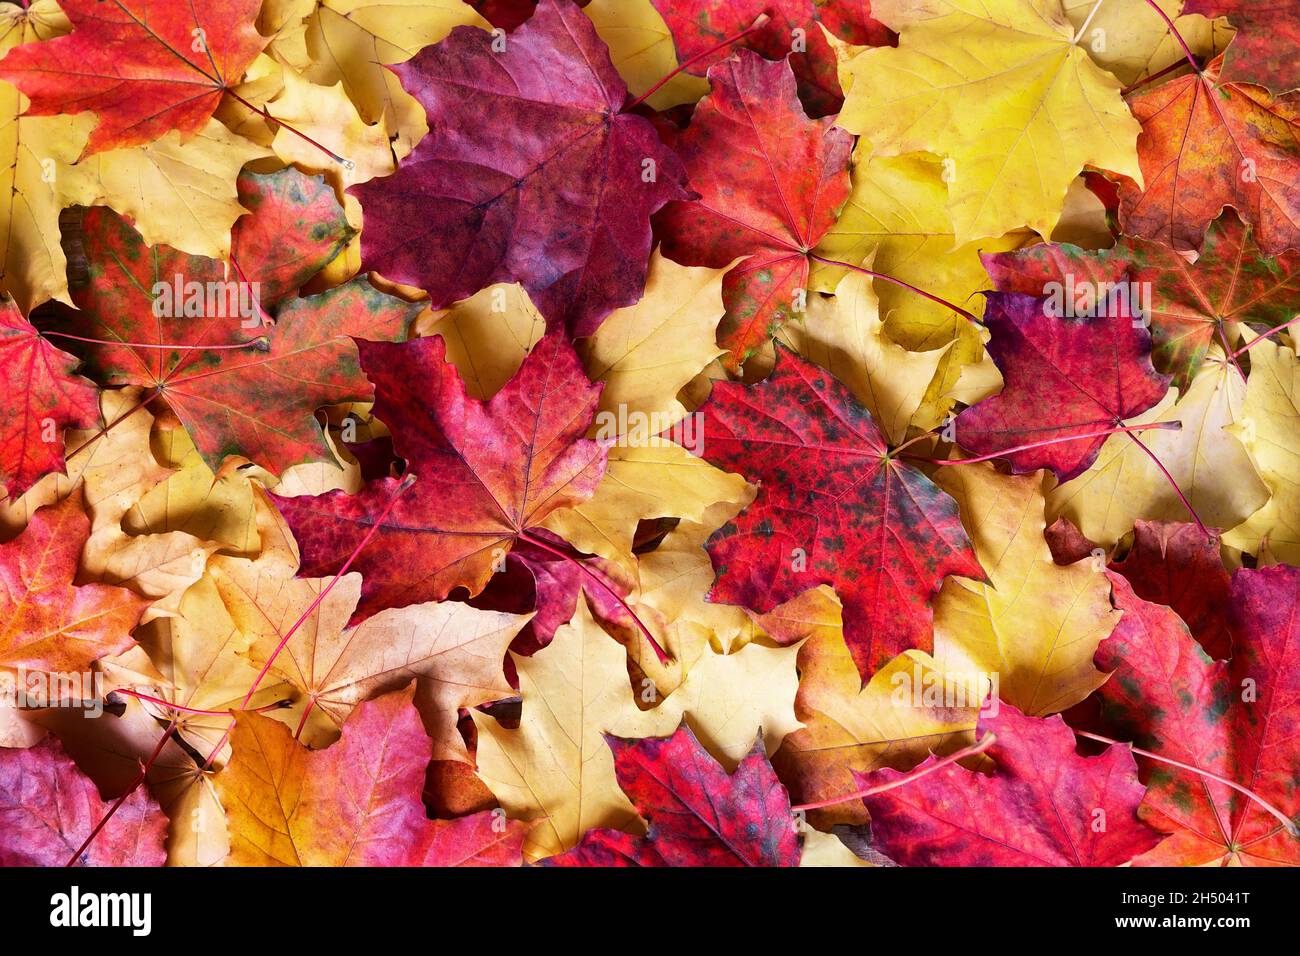 Fondo de las hojas caídas del otoño. Hojas de otoño coloridas, amarillas, naranjas, marrones en el suelo en la temporada de otoño. Foto de stock